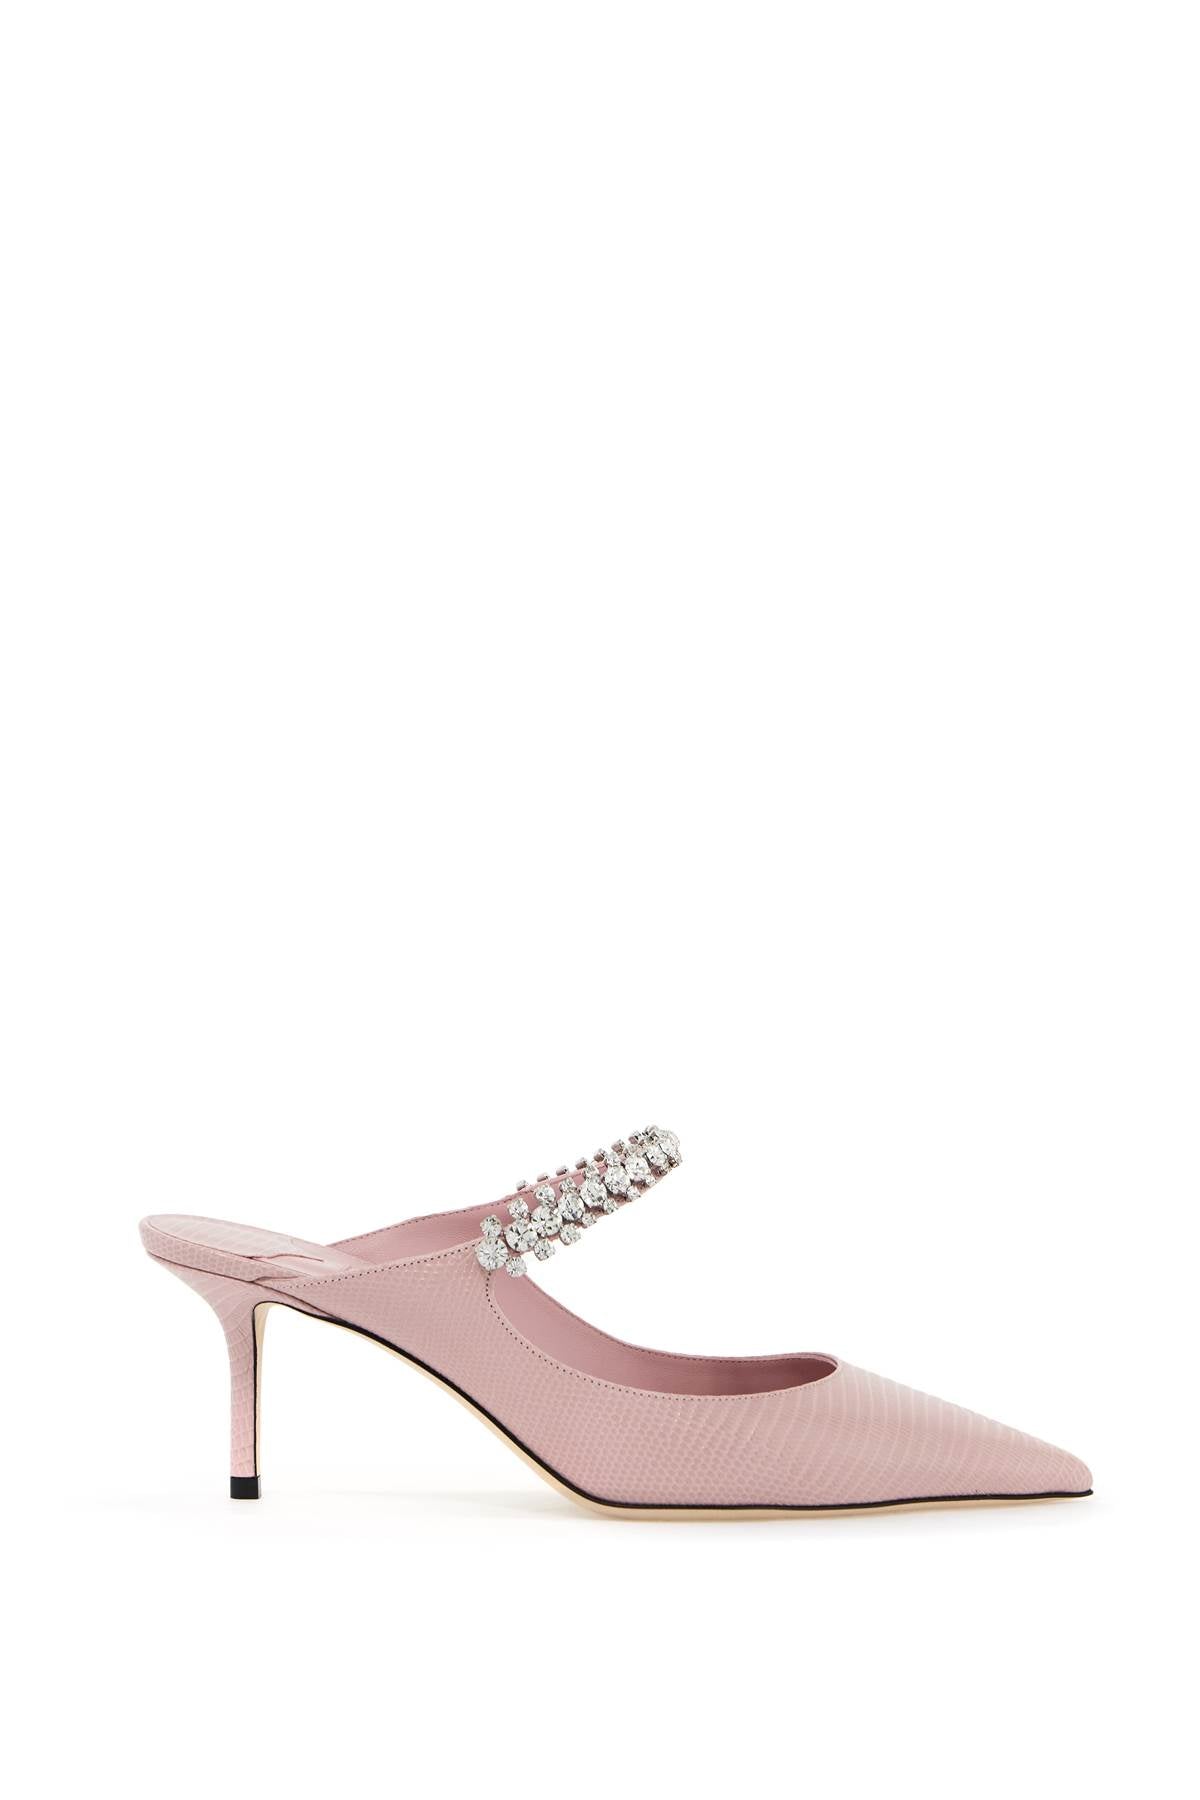 حذاء نسائي مسطح من جلد السحلية المزخرف بكريستالات باللون الوردي الجميل